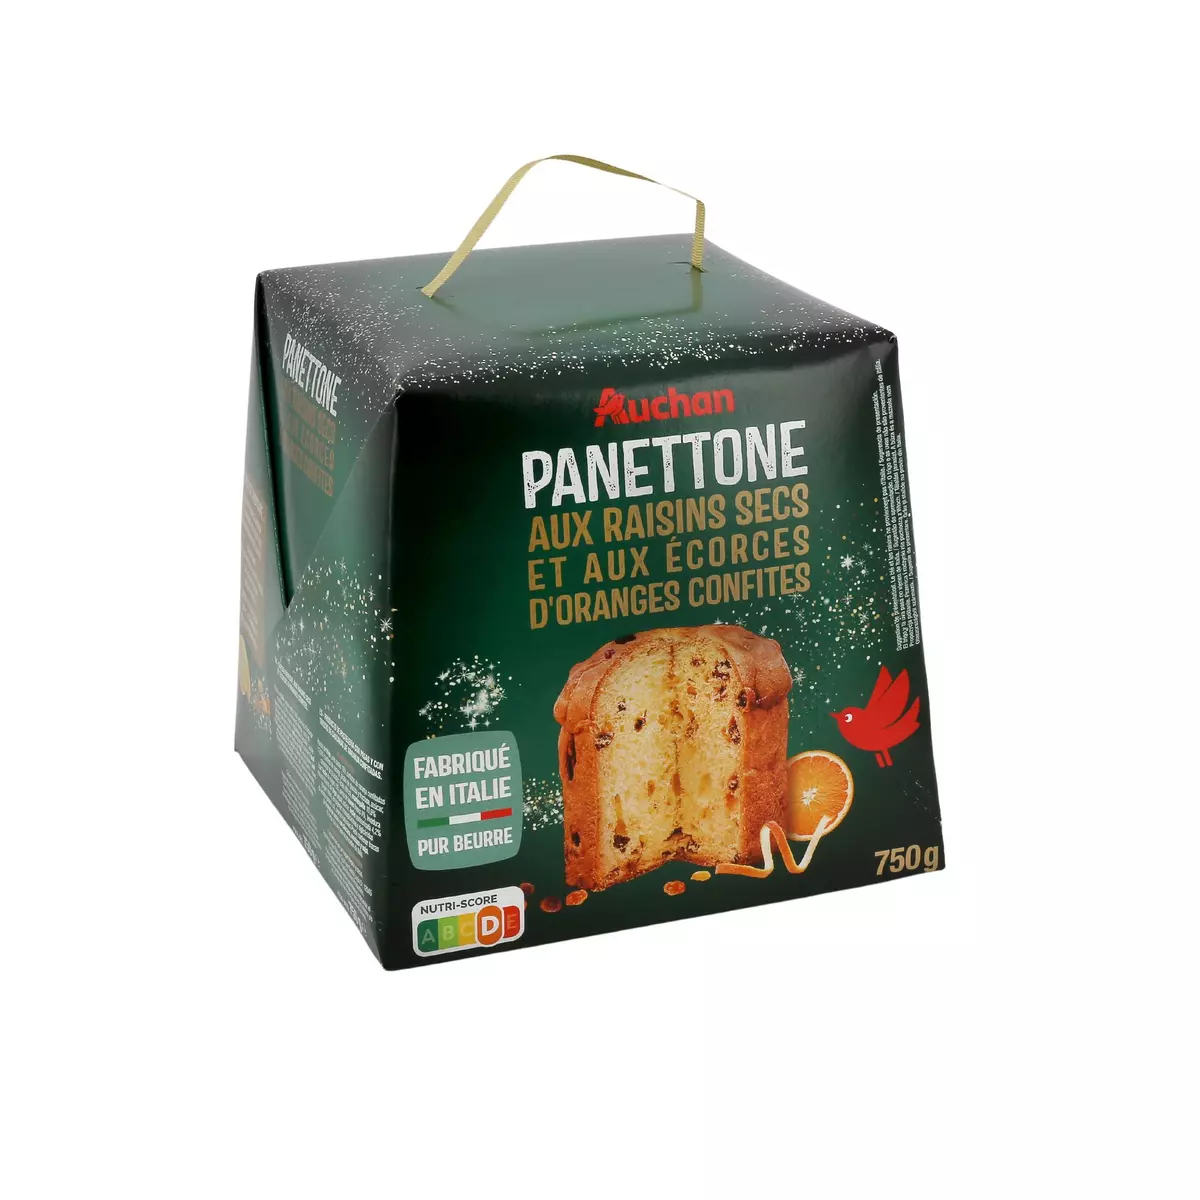 AUCHAN Panettone pur beurre raisins secs écorces oranges confites 1 pièce 750g